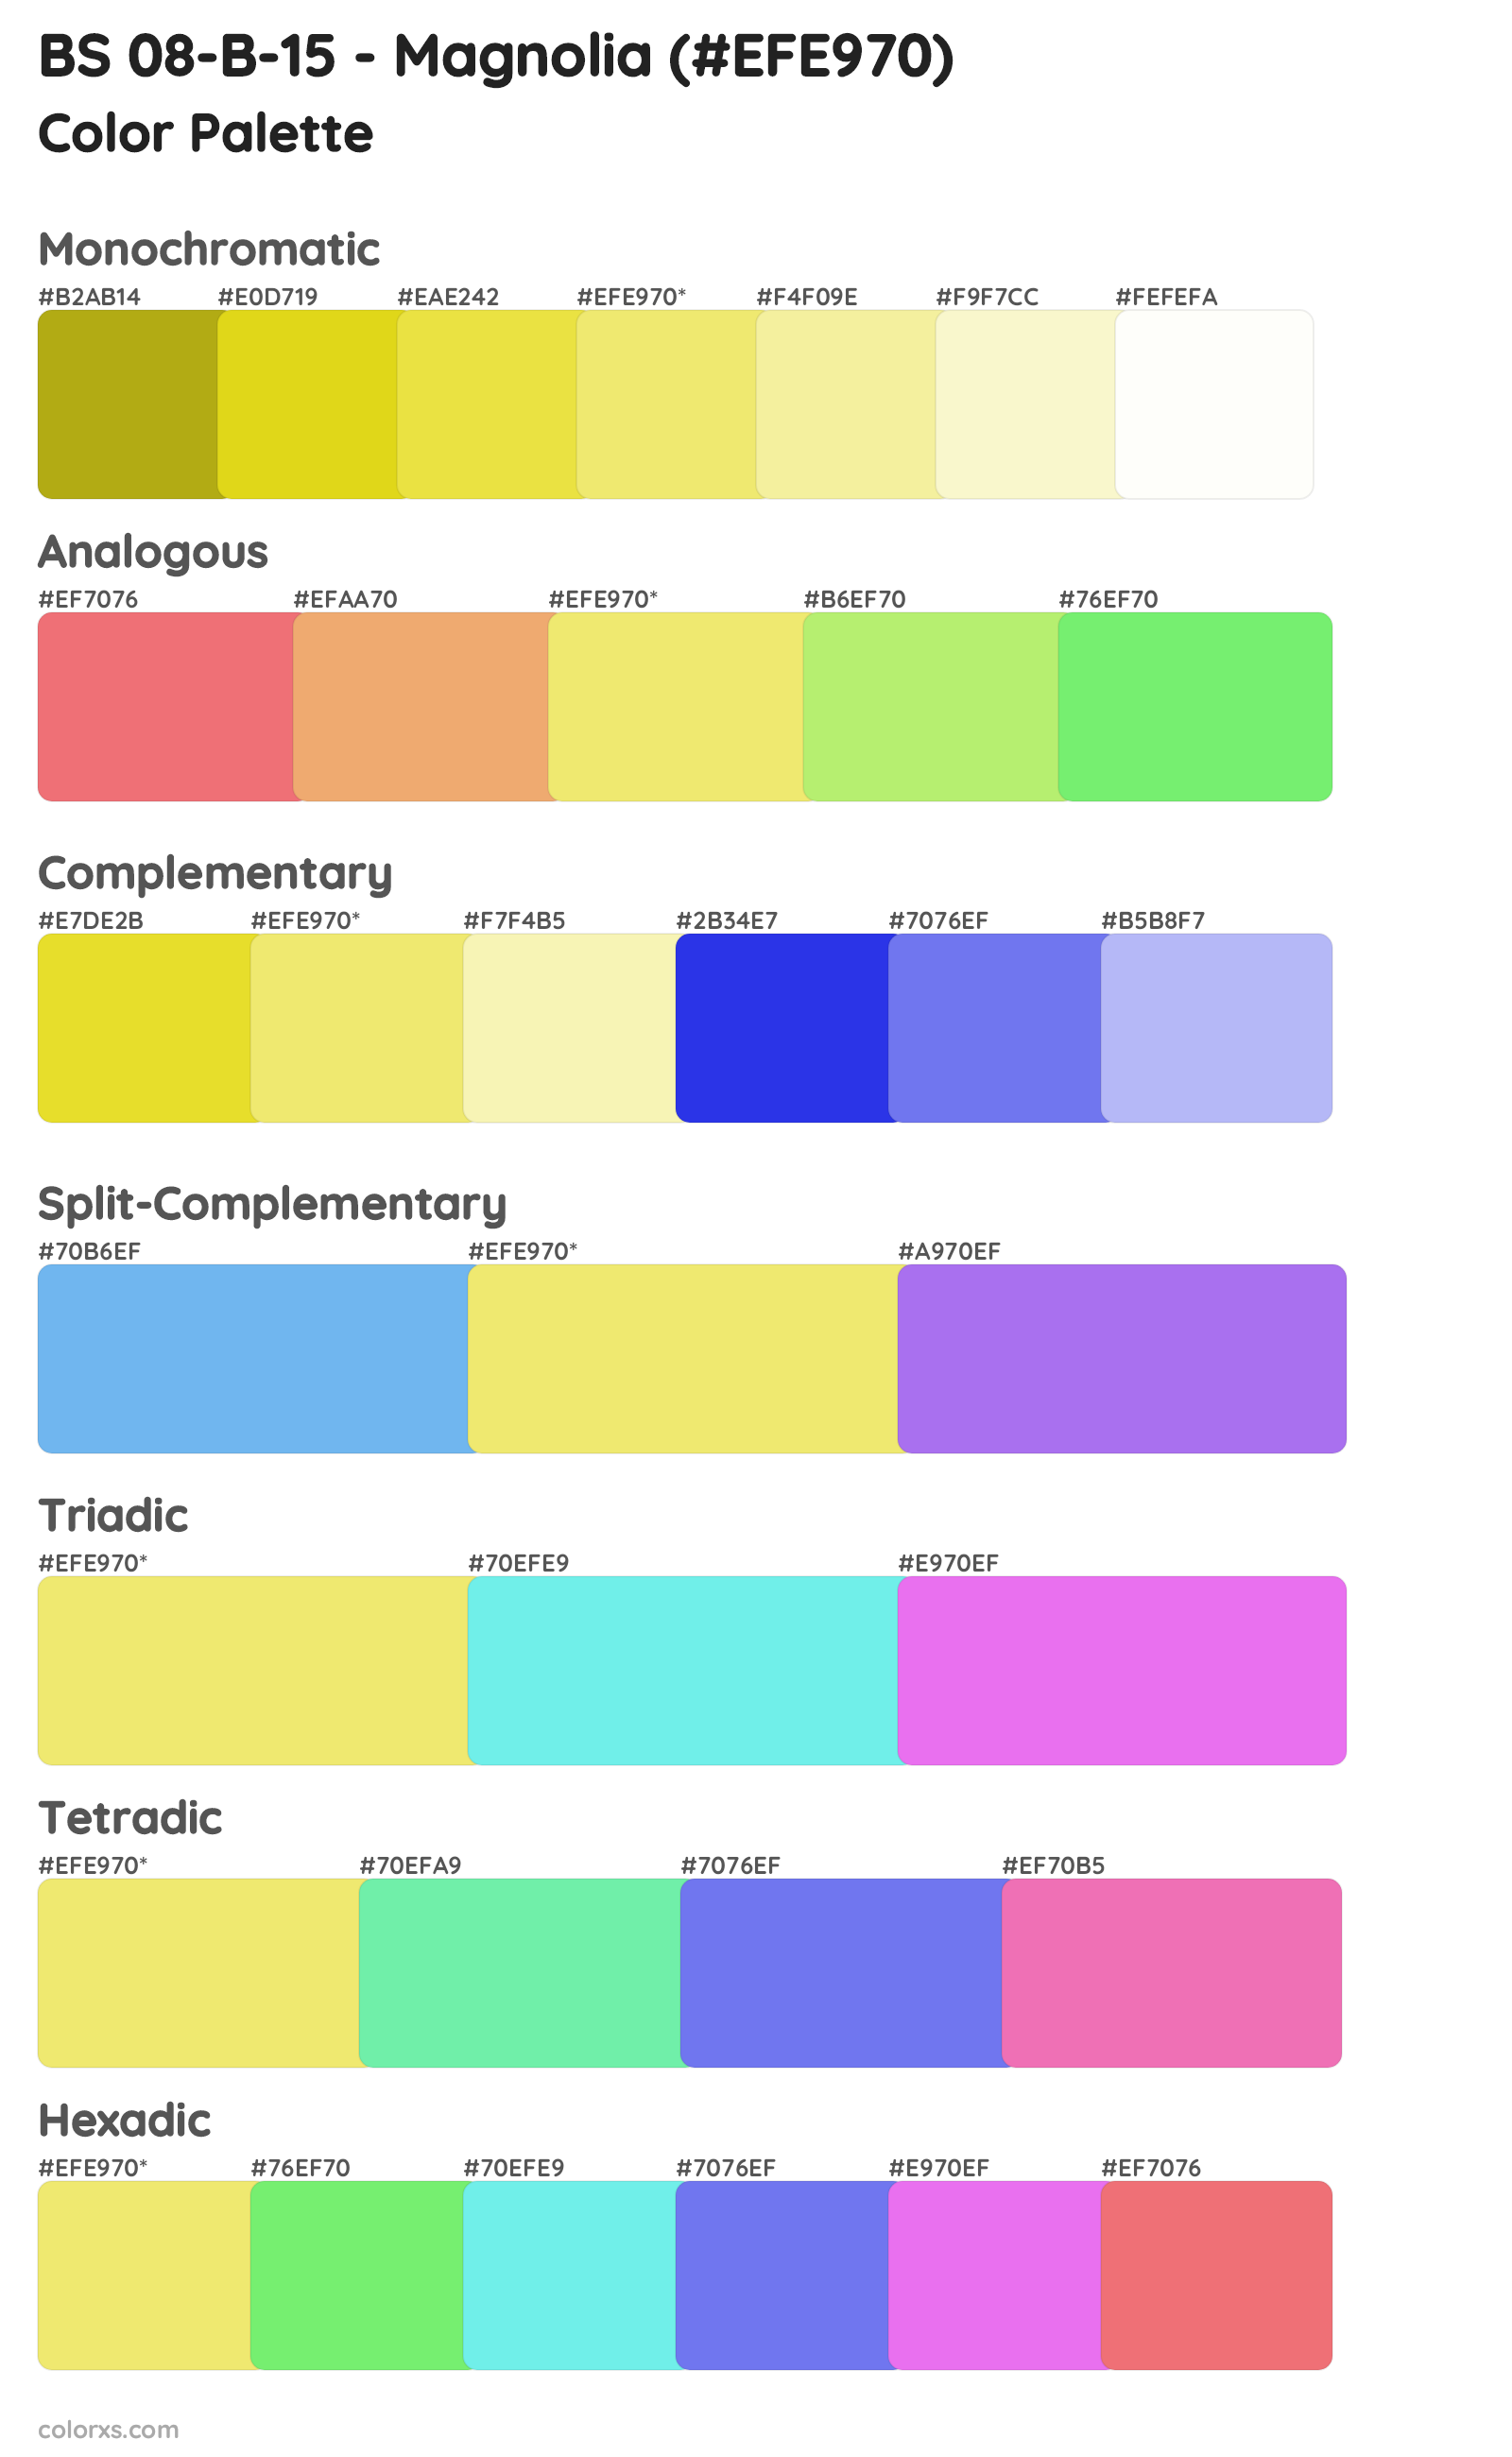 BS 08-B-15 - Magnolia Color Scheme Palettes